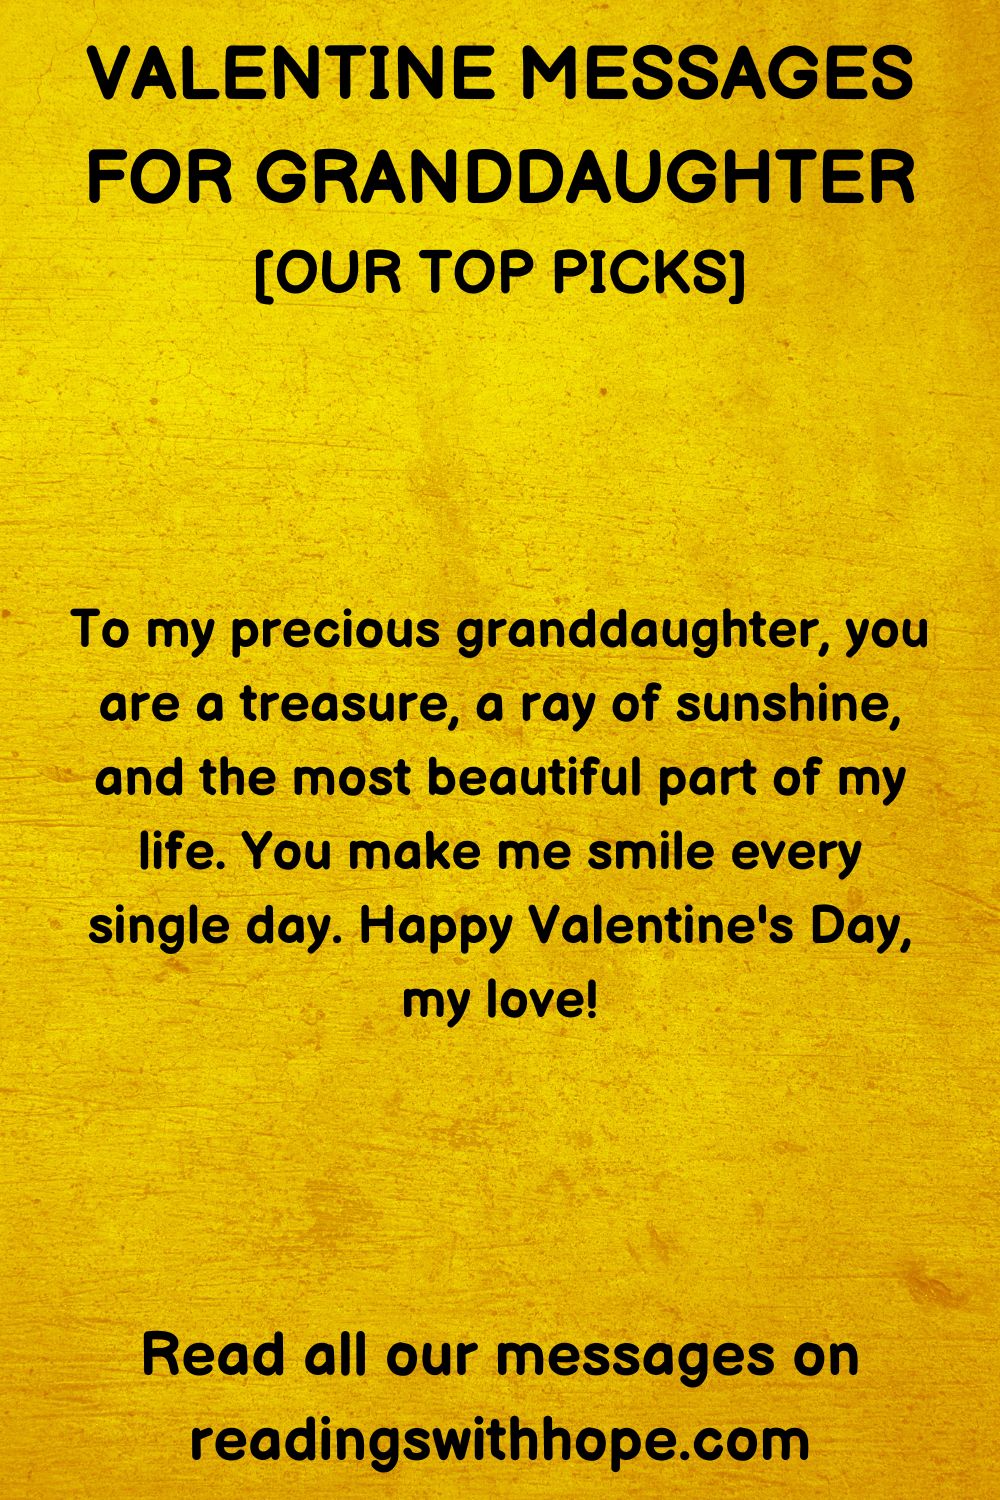 48 Valentine Messages for Granddaughter